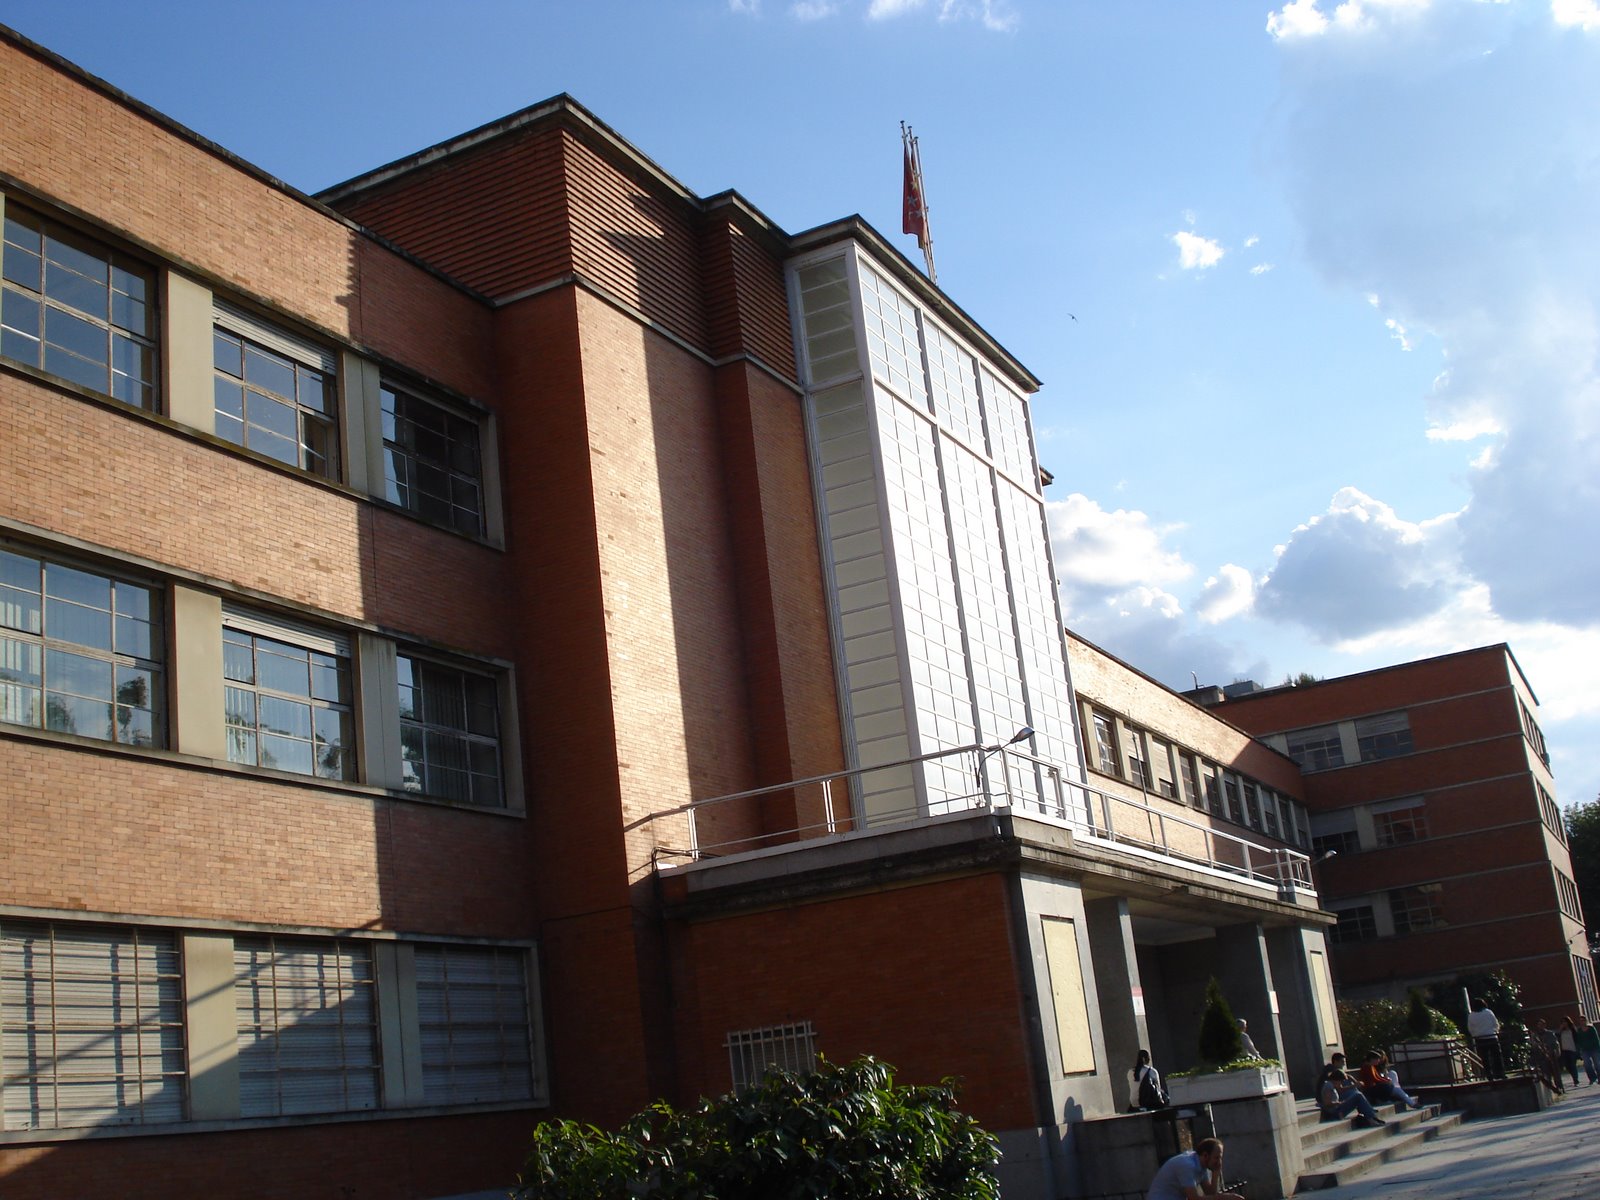 Facultad de Filosofía: obra arquitectónica destacada del “Art-Decó” más puro en Madrid, construida entre 1932 y 1936 por Agustín Aguirre